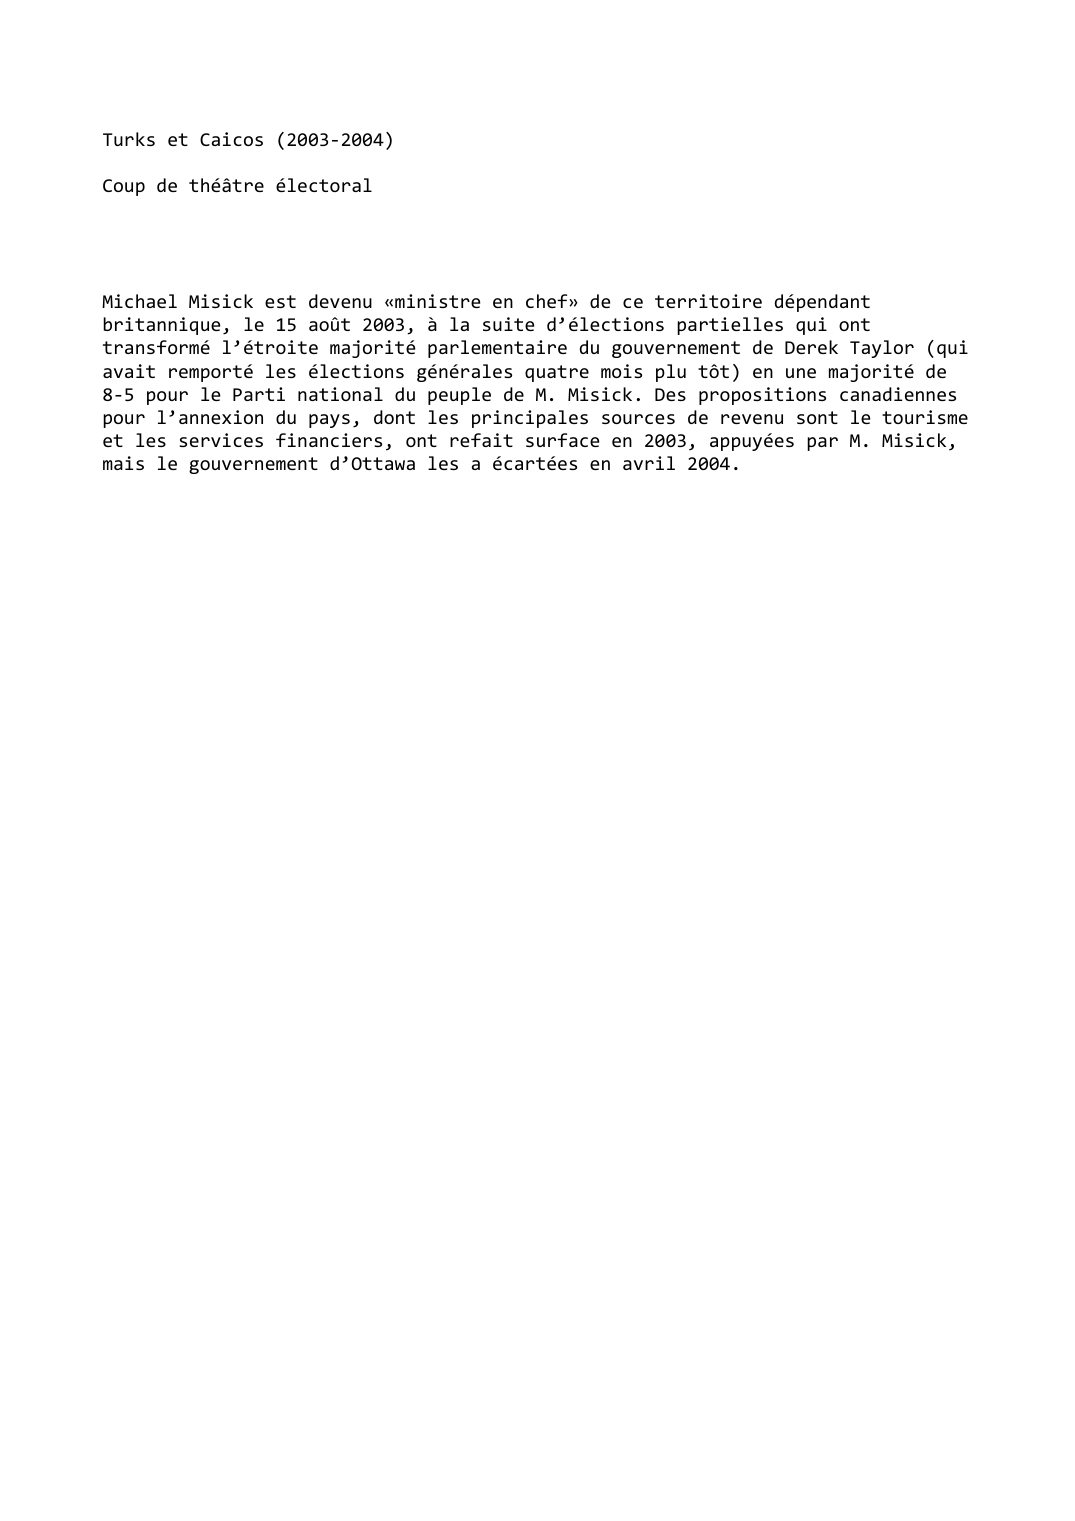 Prévisualisation du document Turks et Caicos (2003-2004)

Coup de théâtre électoral